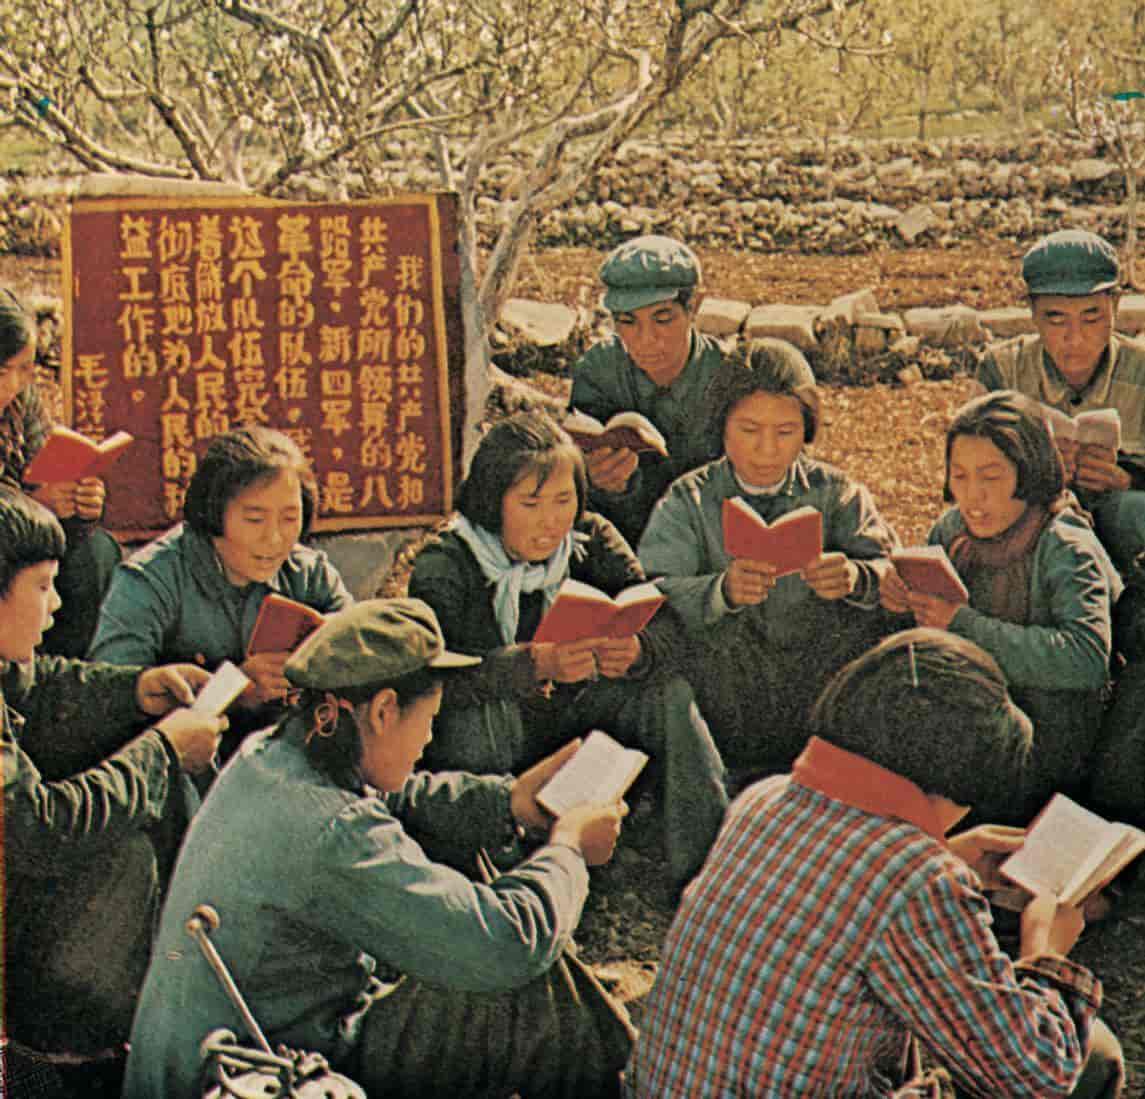 kulturrevolusjonen, kollektiv lesing